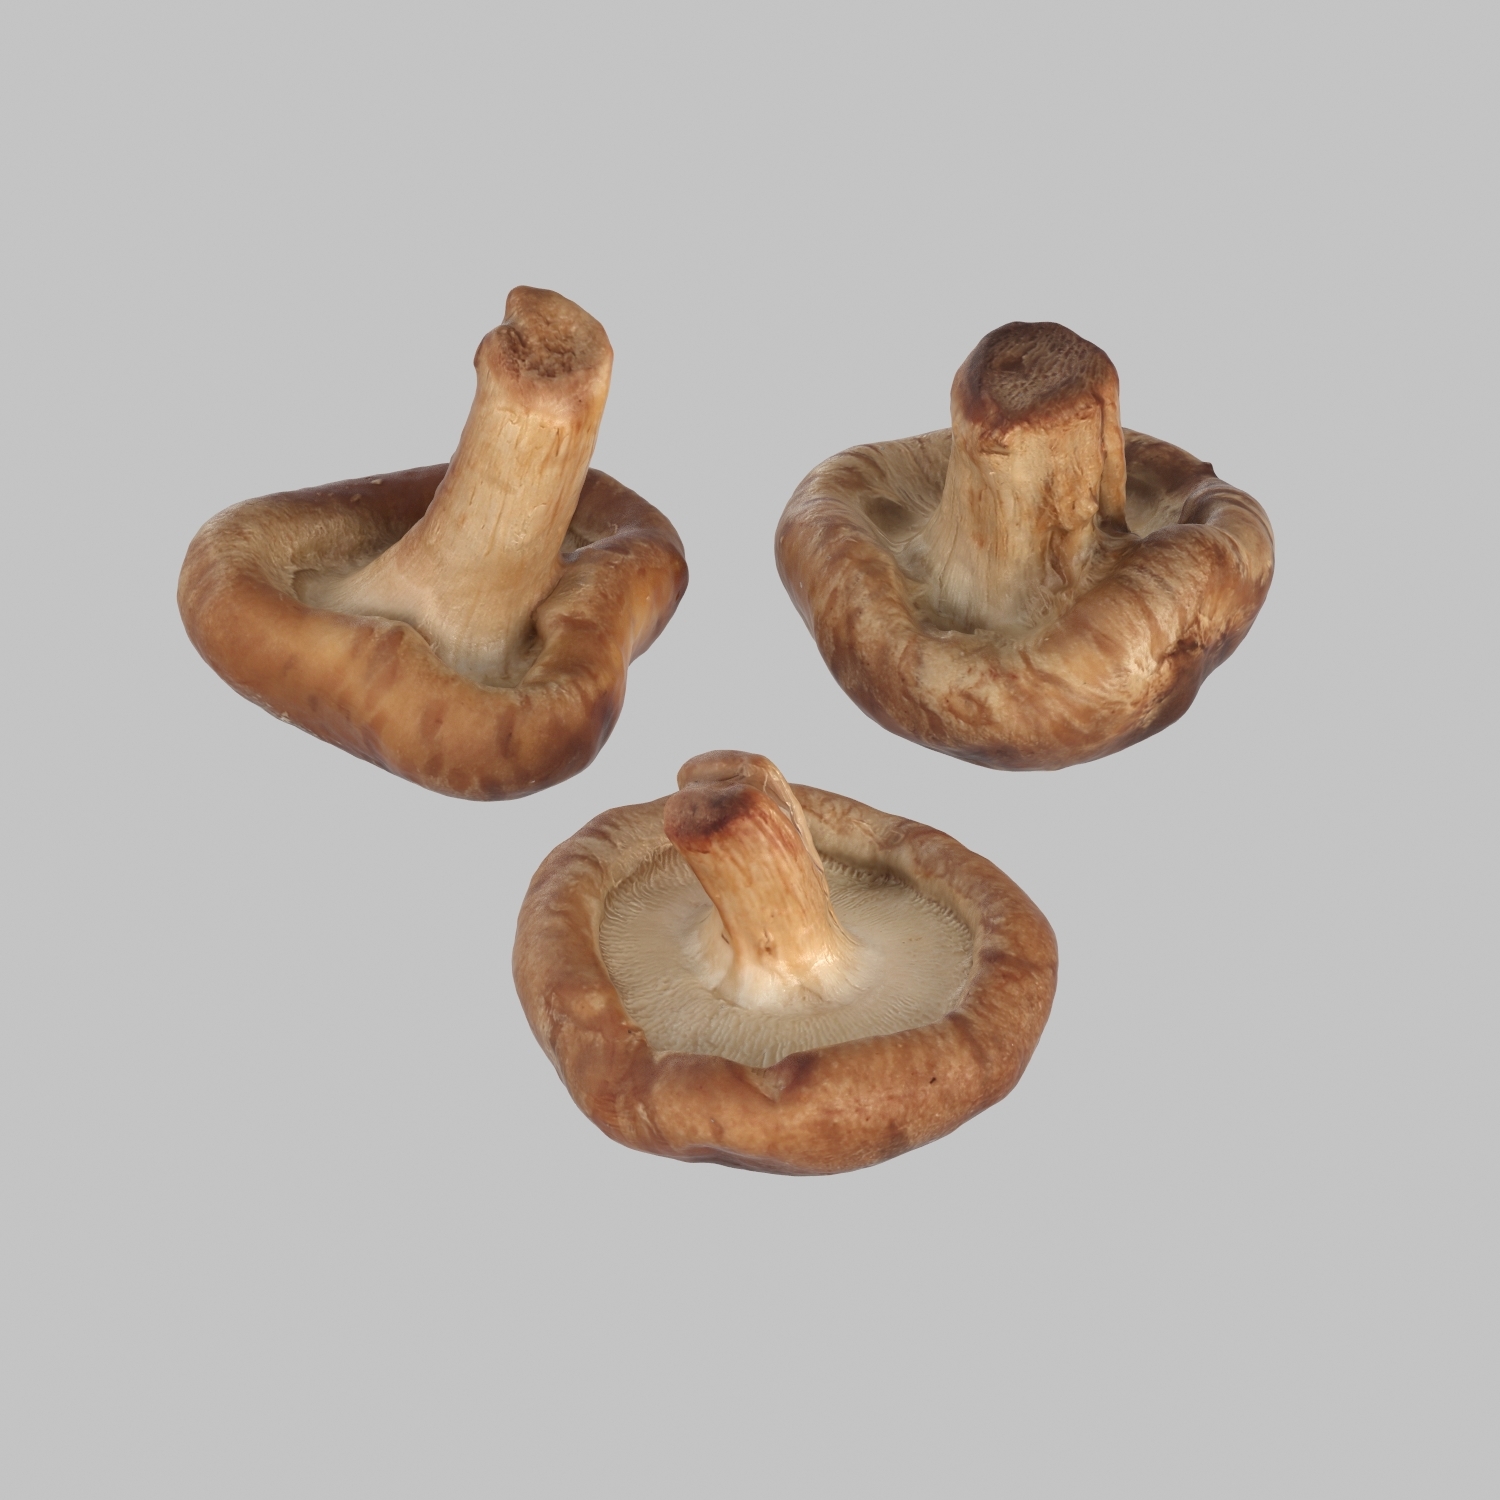 蘑菇 3D模型 $29 - .lwo .fbx .obj .max - Free3D